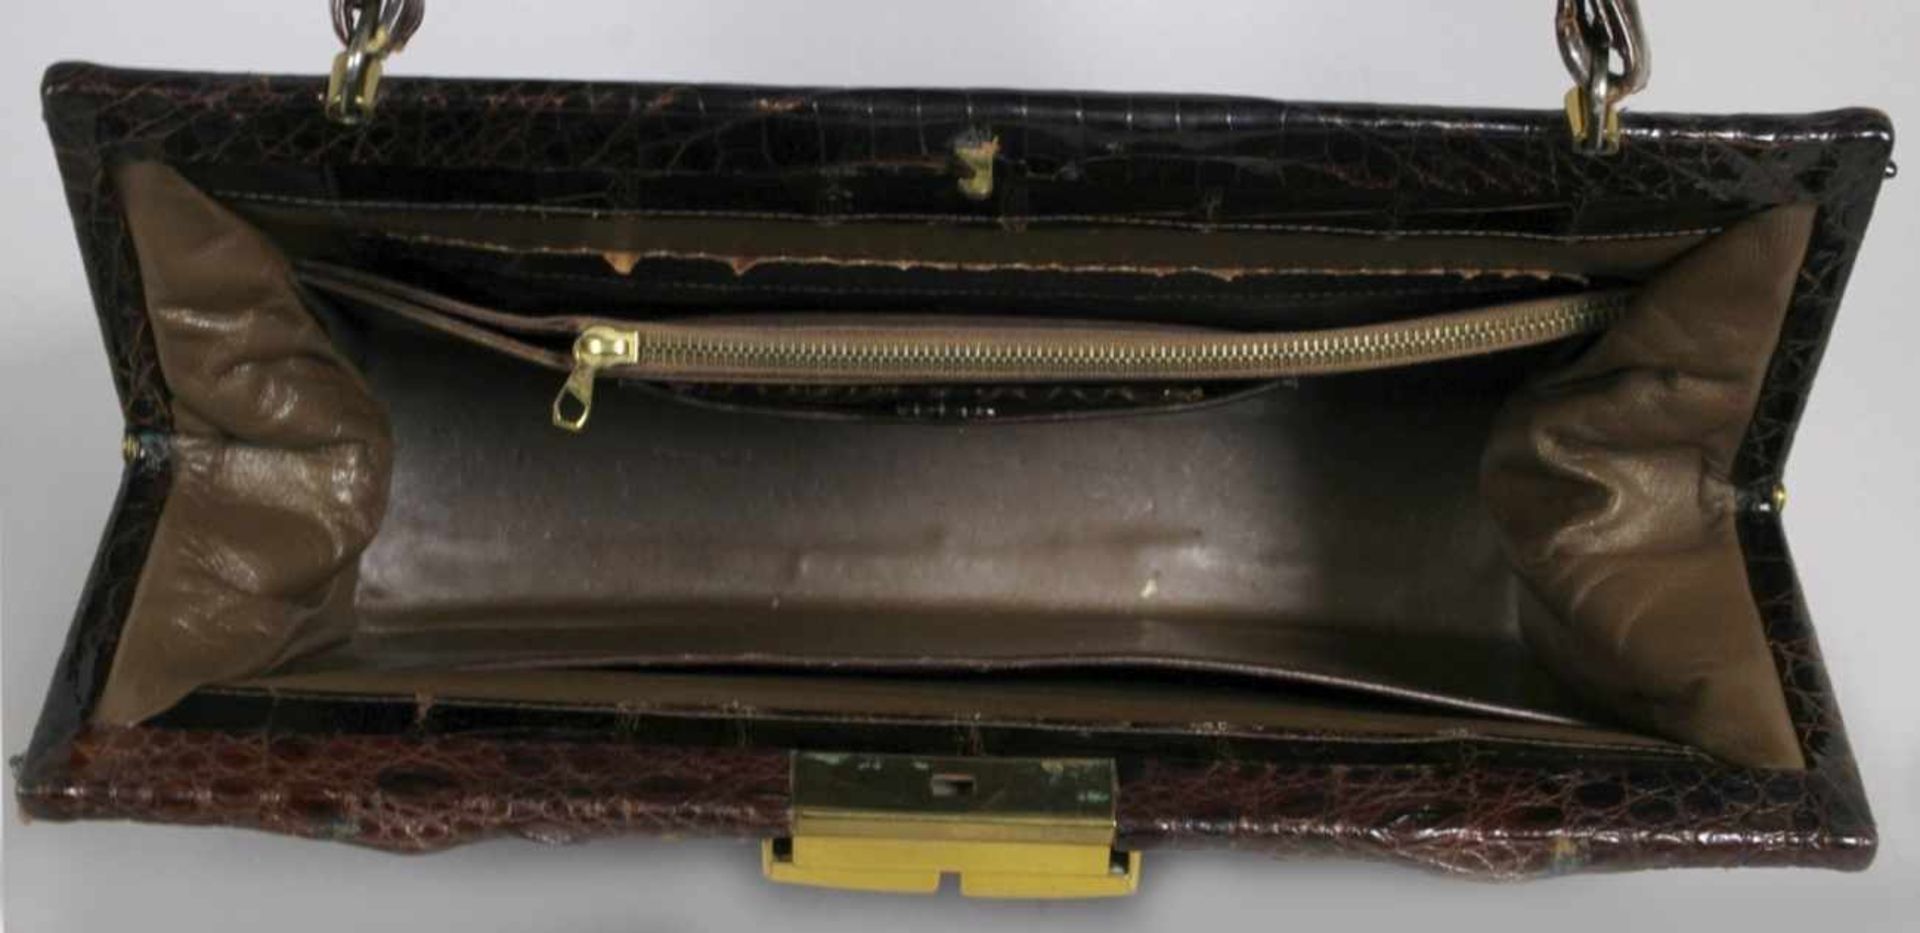 Damen-Handtasche, dunkelbraunes Zuchtalligator-Leder, frontseitig gefertigt mit mittiggroßer, - Bild 3 aus 3